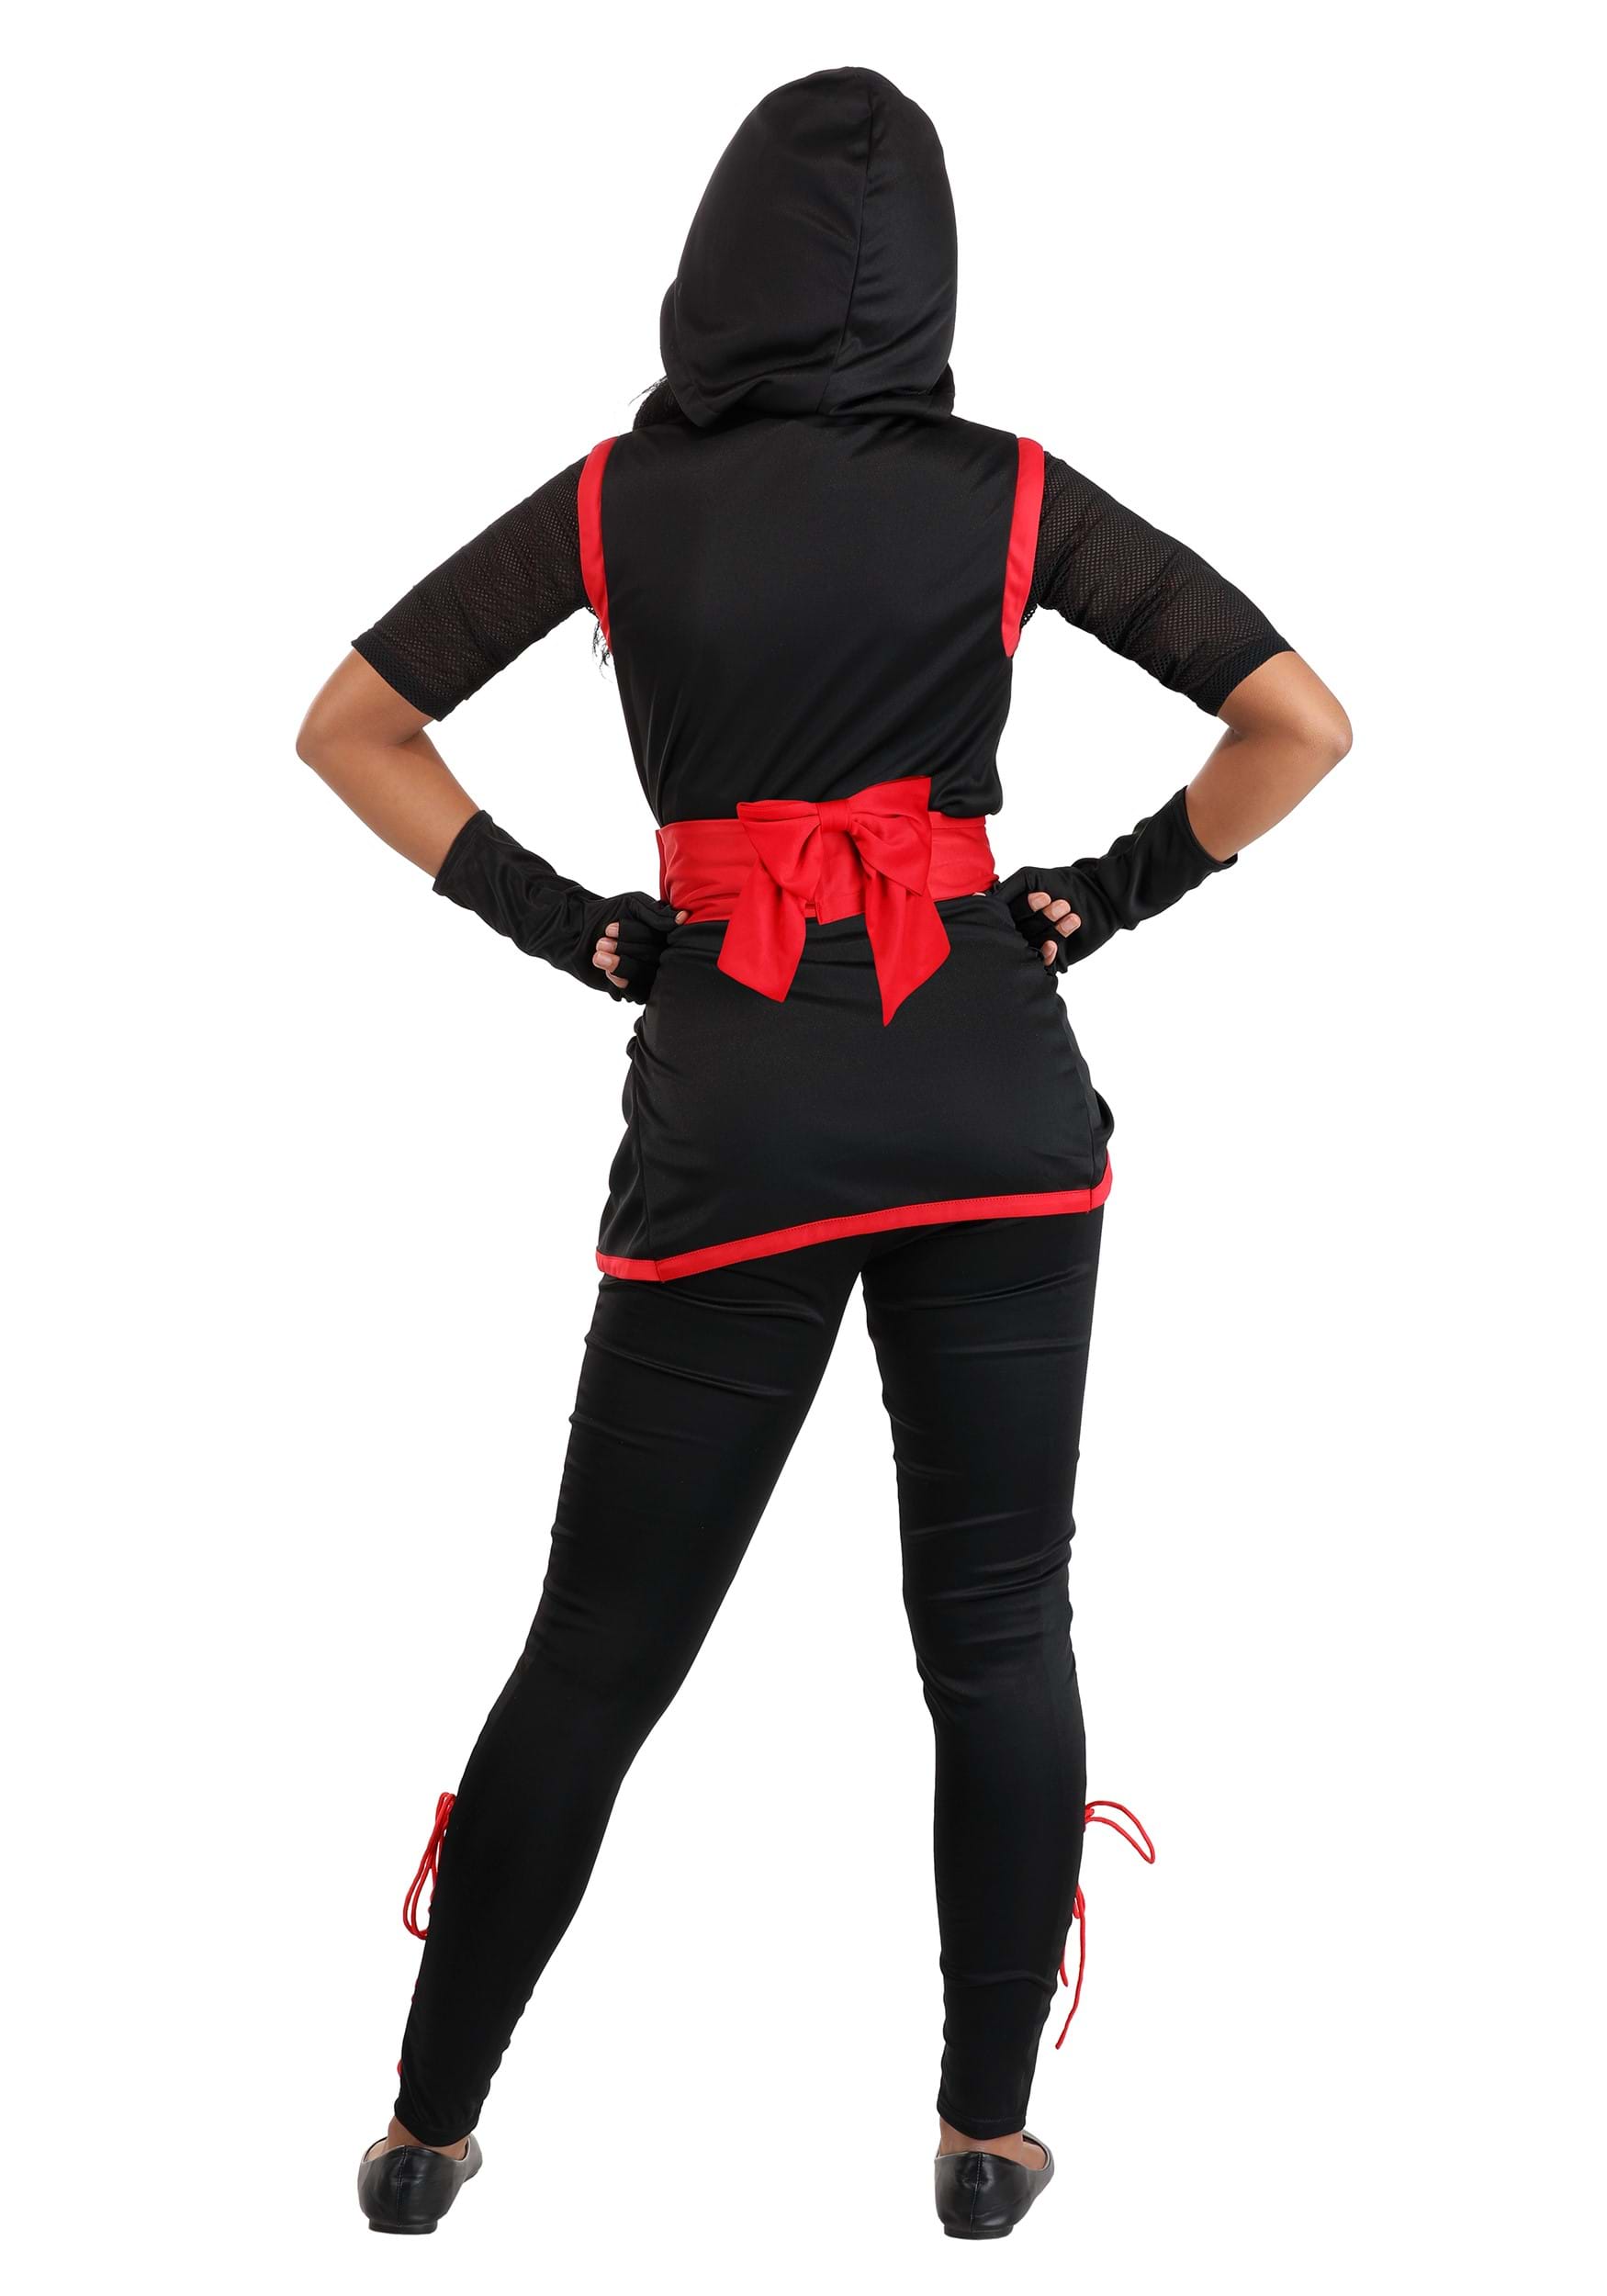 Stealthy Ninja Fancy Dress Costume